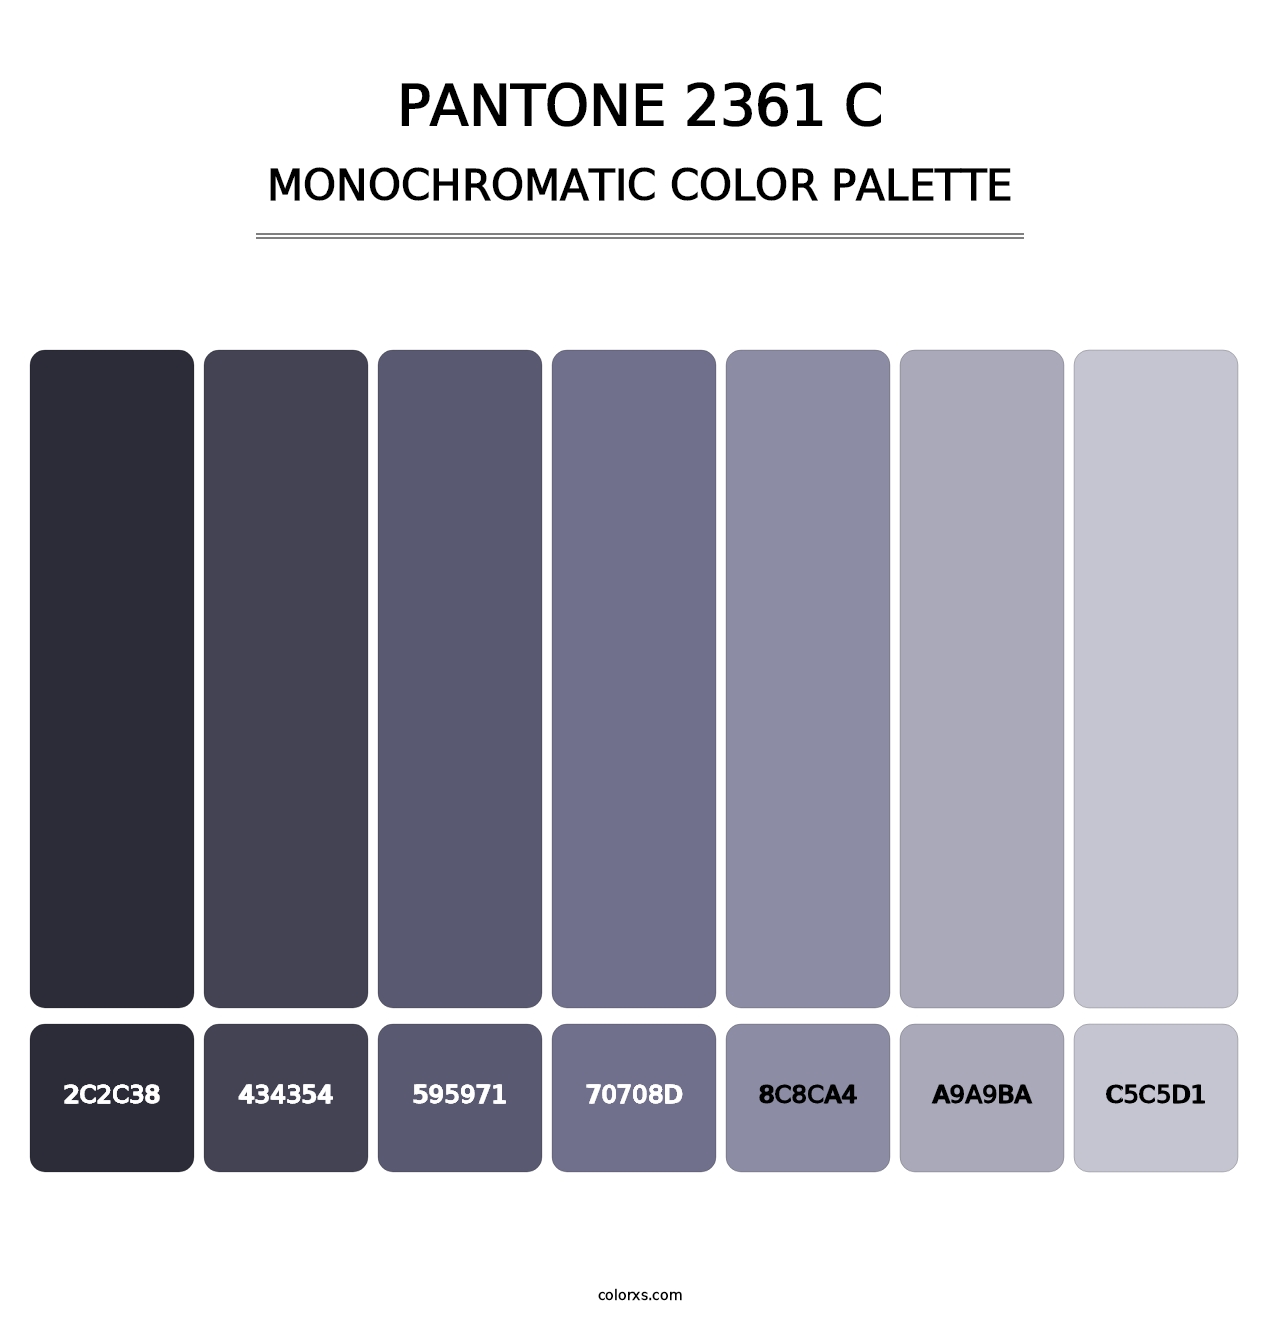 PANTONE 2361 C - Monochromatic Color Palette